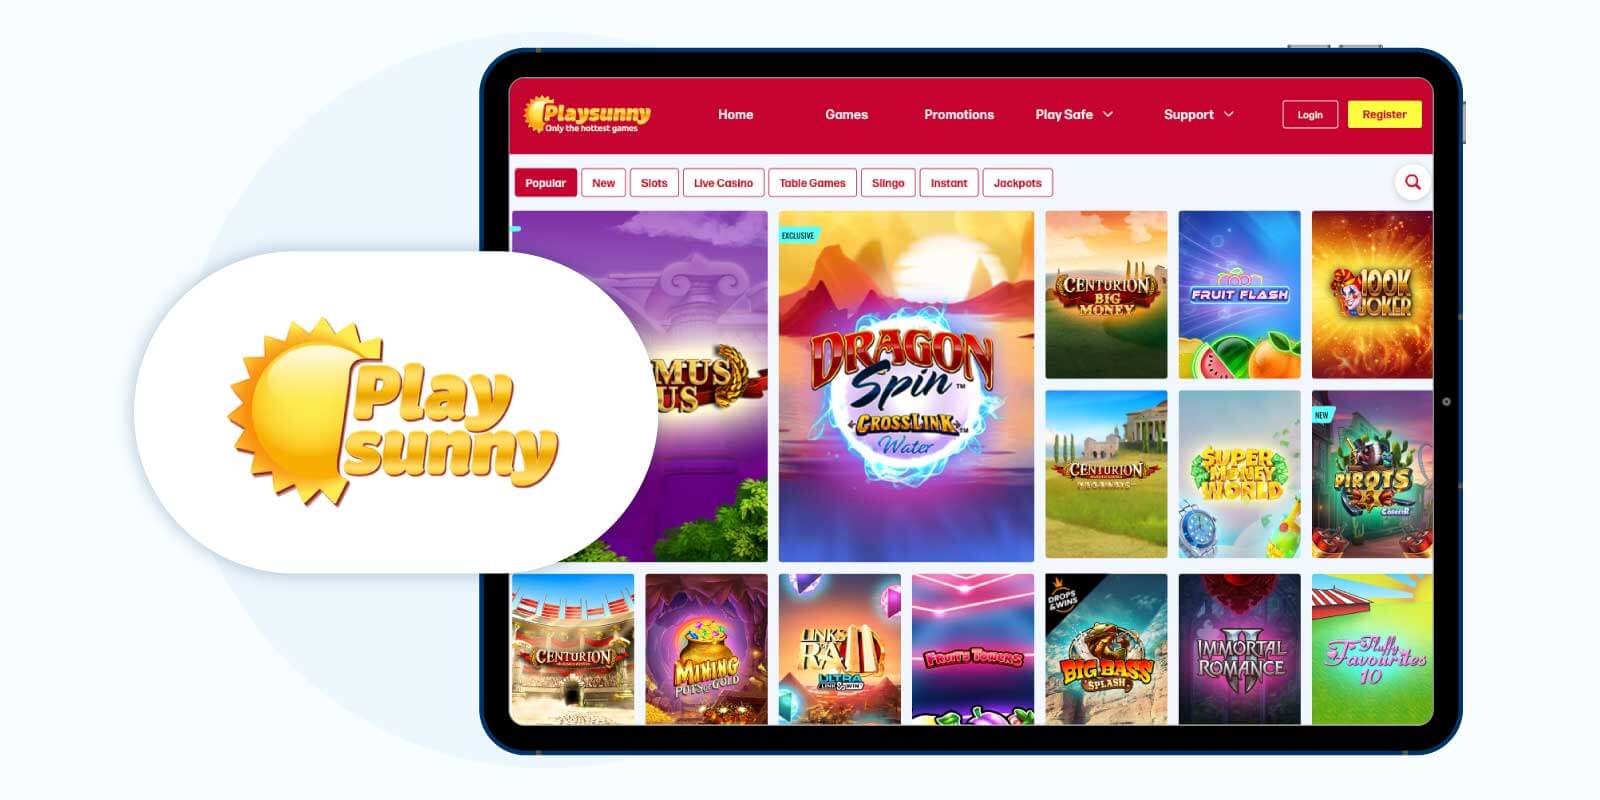 Playsunny Casino - Runner-Up Top Payforit UK Casino